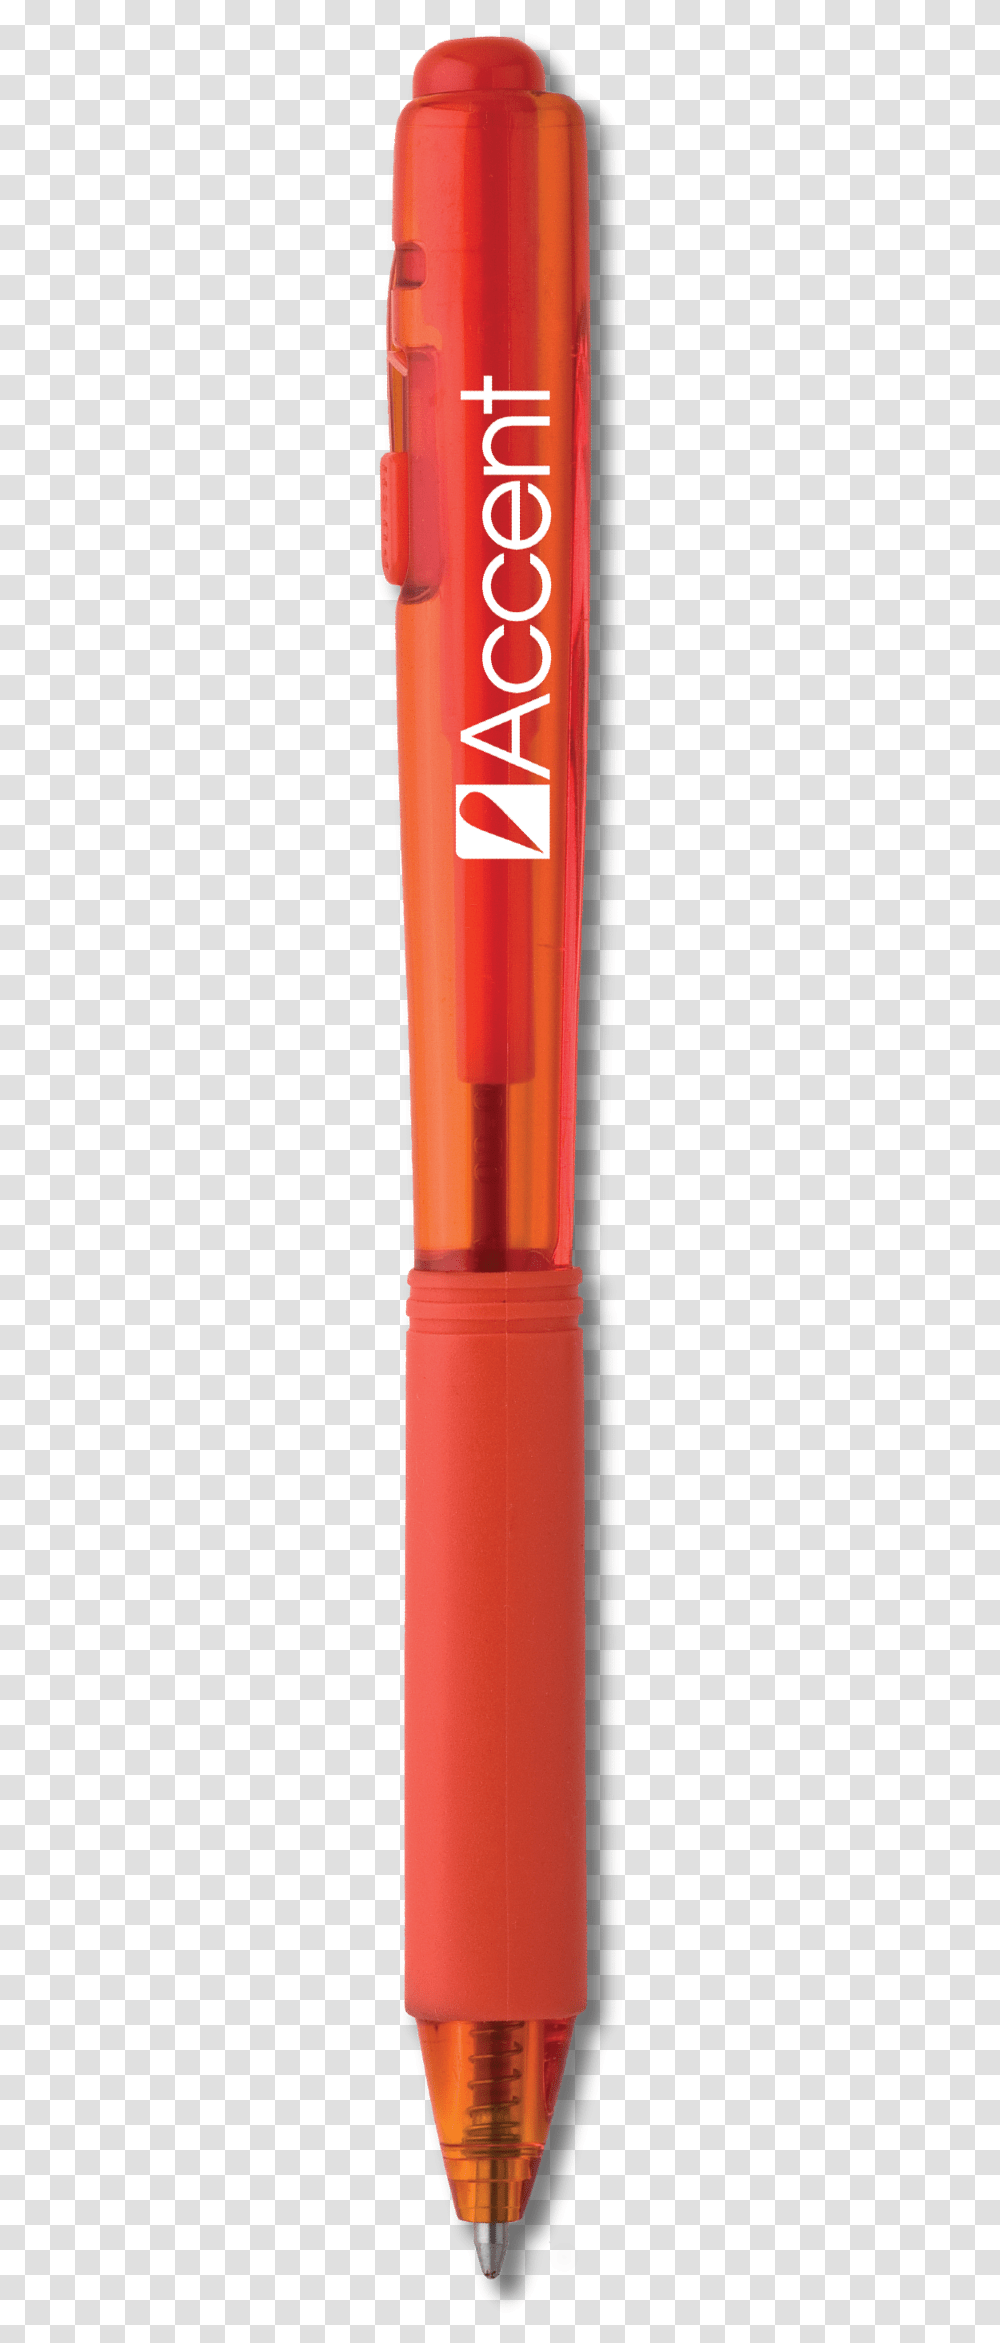 Red Pen Calligraphy, PEZ Dispenser, Lighter, Cylinder, Bottle Transparent Png